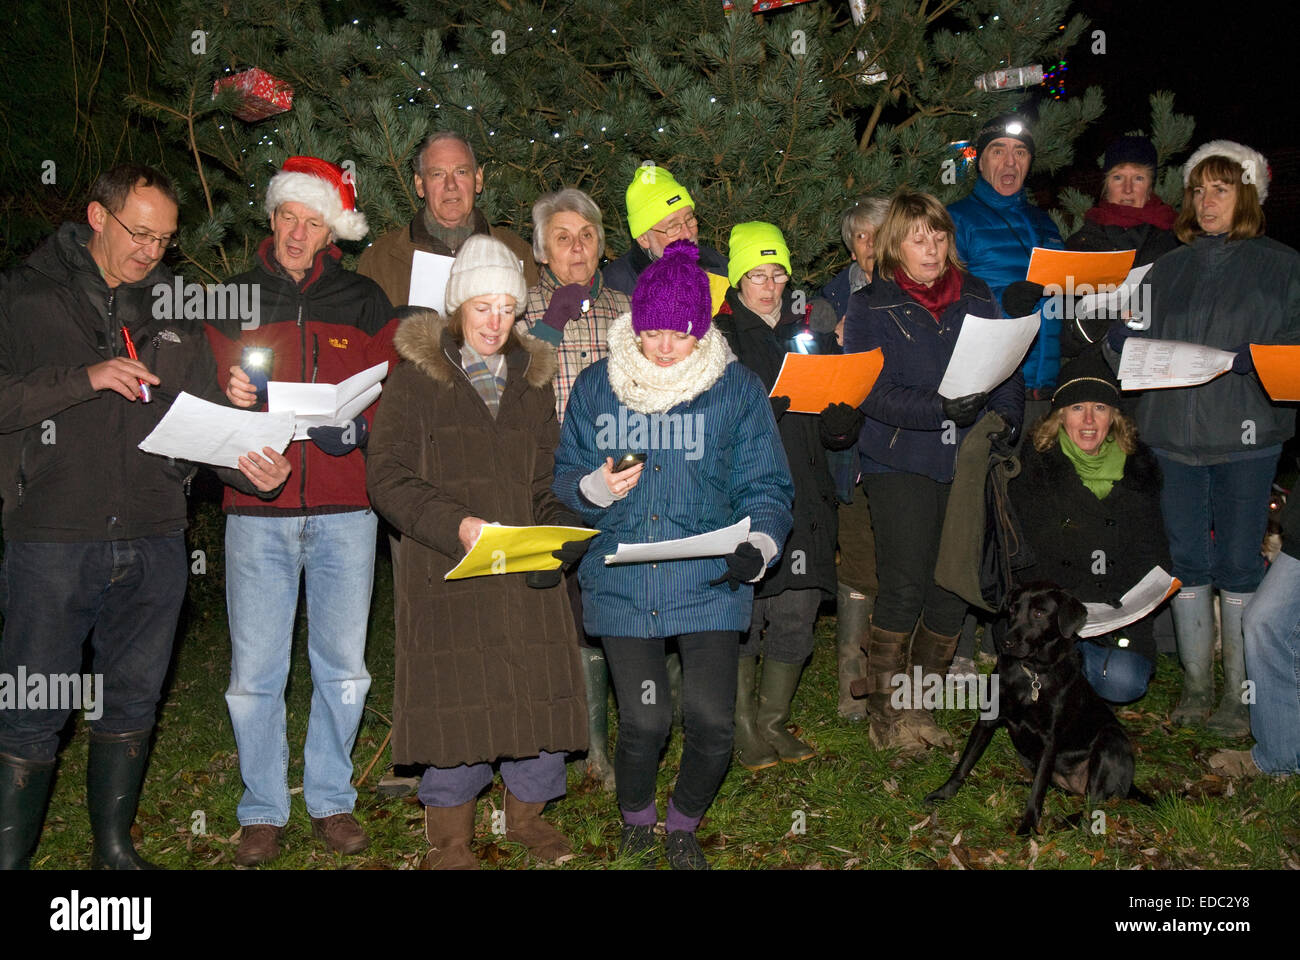 Locals singing outdoor christmas carols in their village, Dockenfield, near Farnham, Surrey, UK. Stock Photo